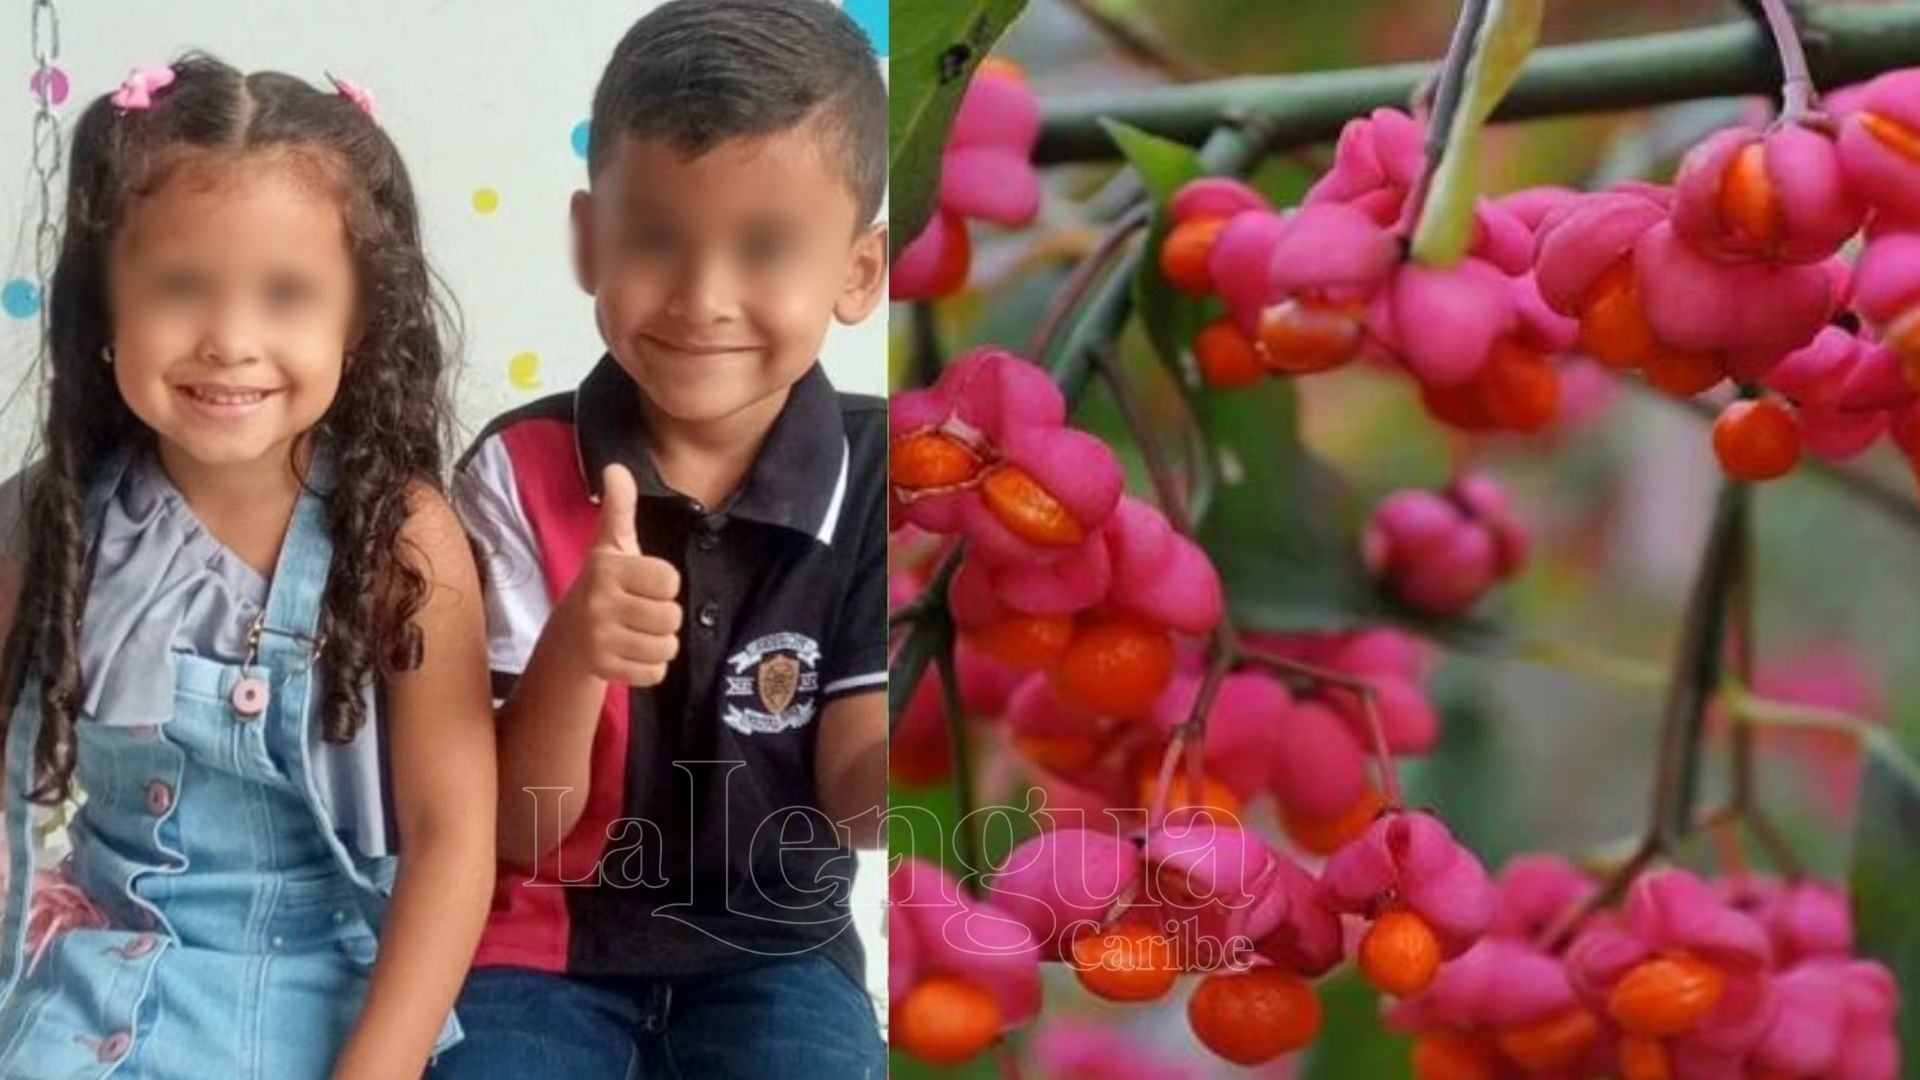 Tenga cuidado, dos niños murieron tras ingerir fruto tóxico en el patio de su casa